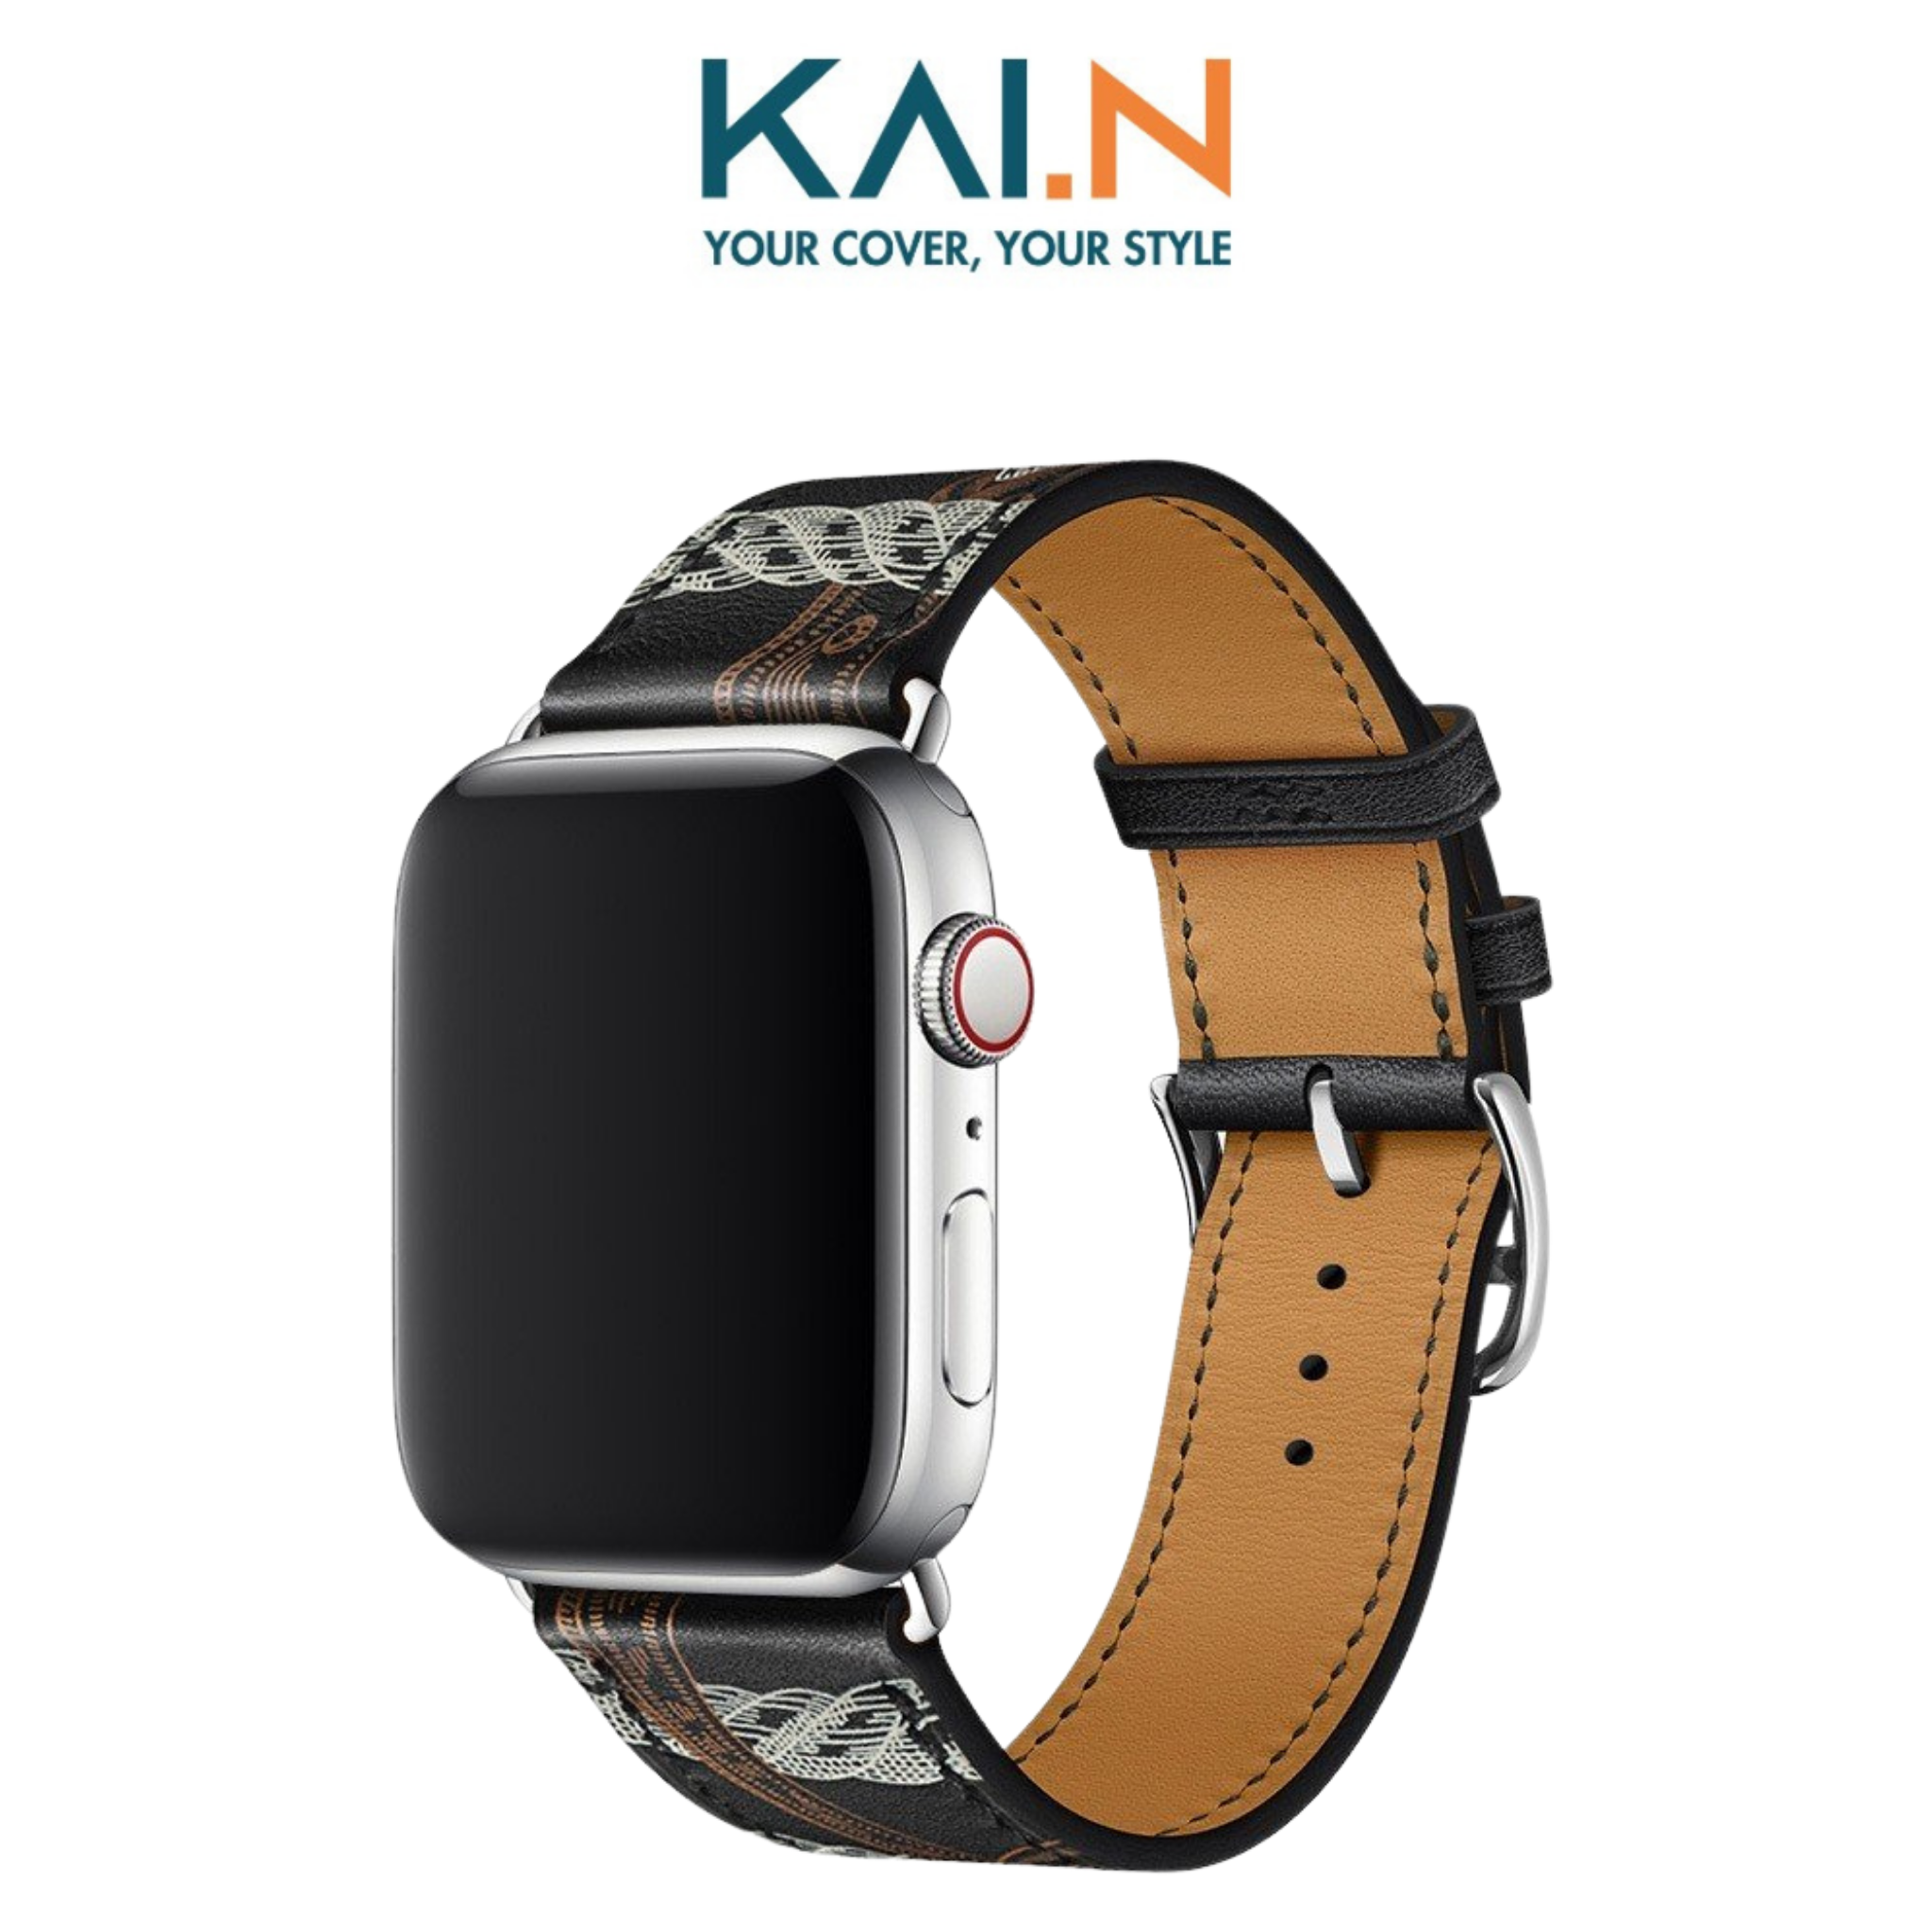 Dây Da Classic Kai Leather dành cho Apple Watch- Hàng chính hãng - 384041mm - New StyleBlack